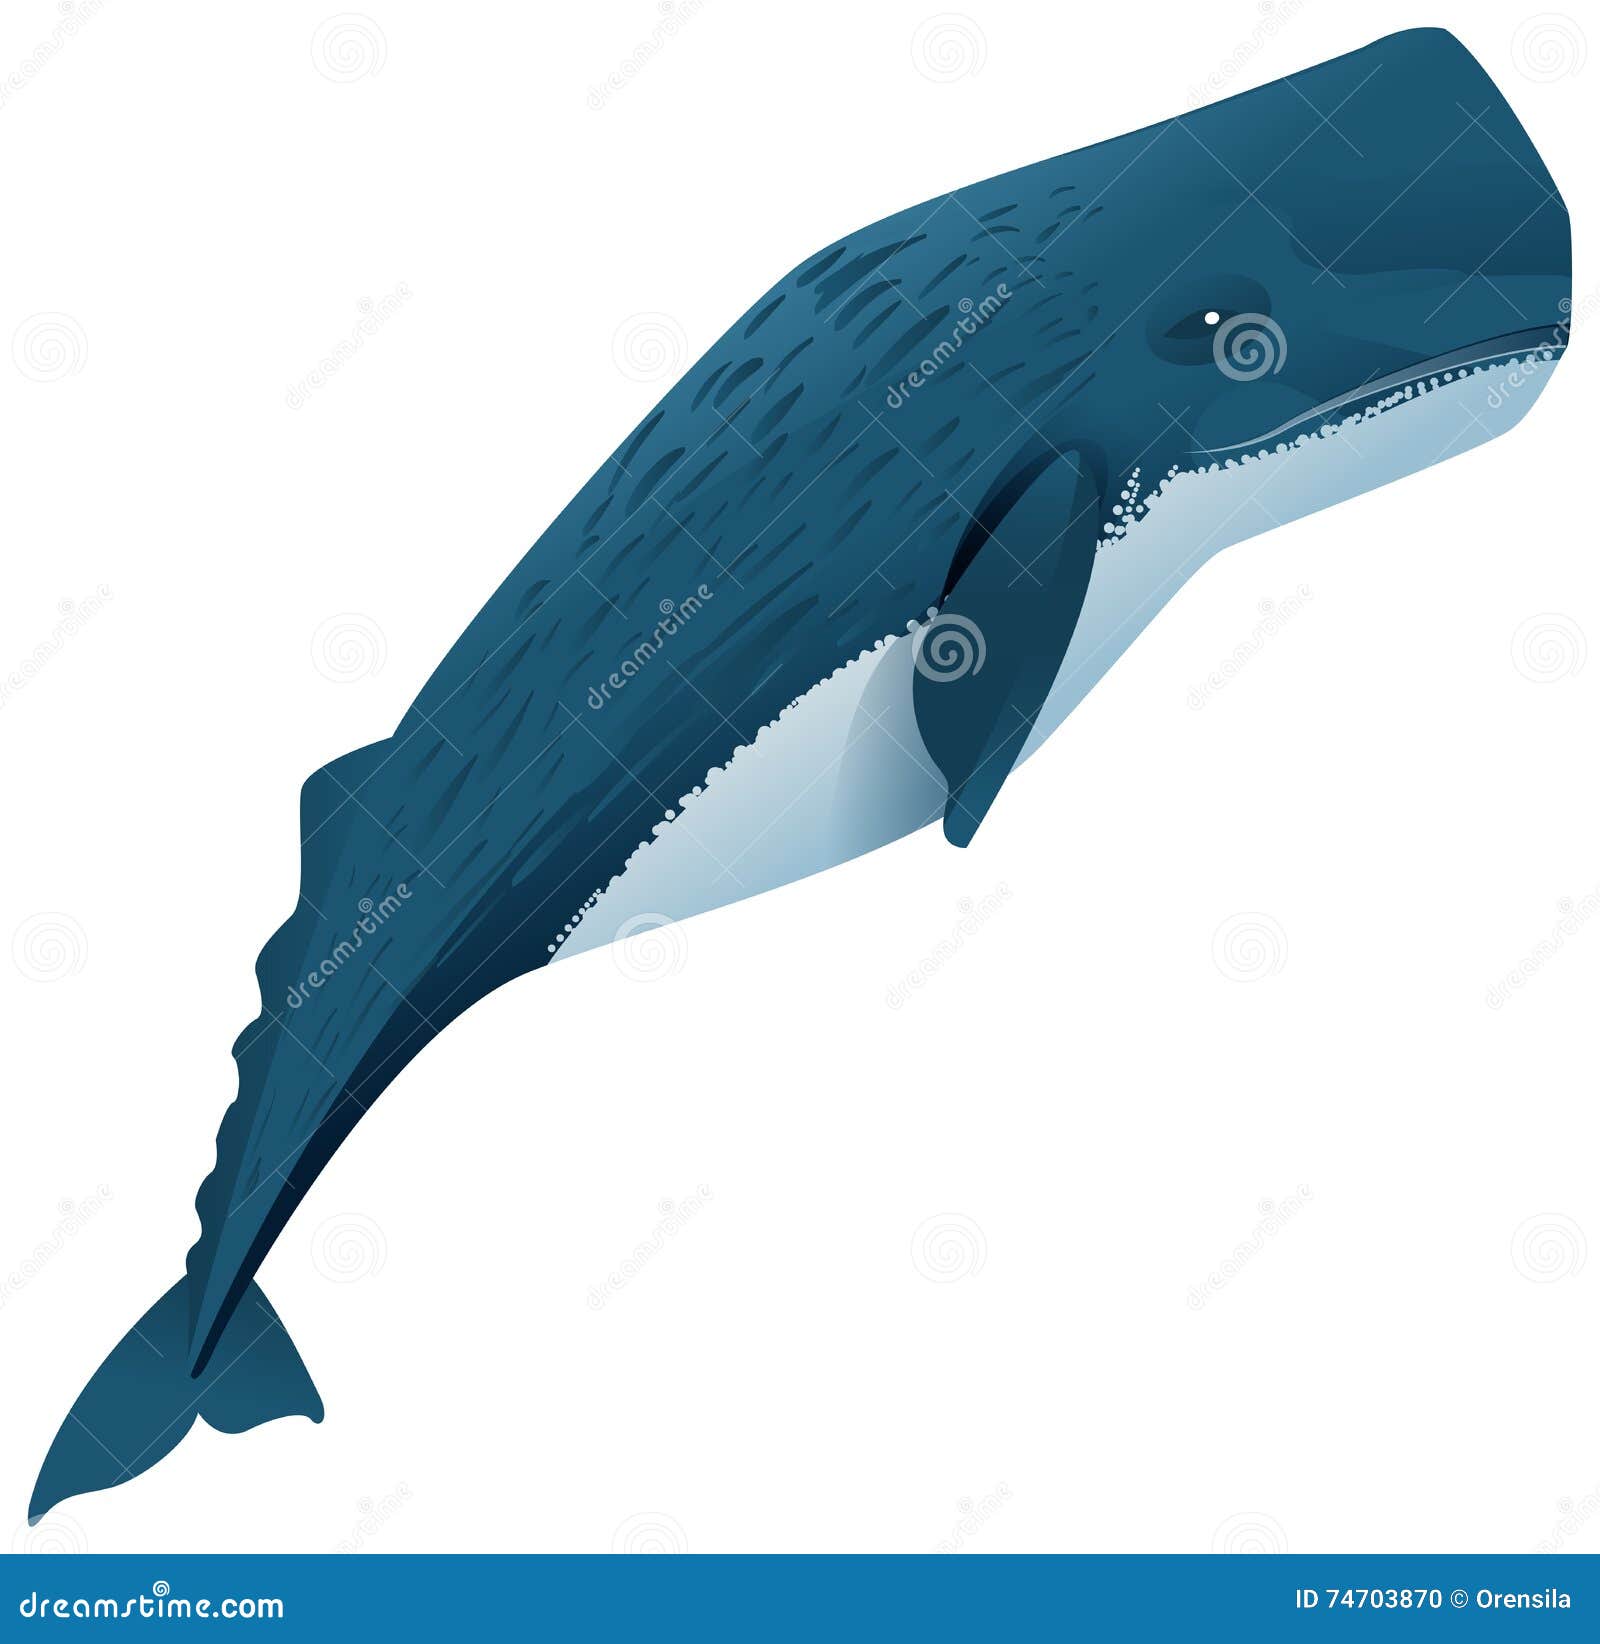 sperm whale marine mammal